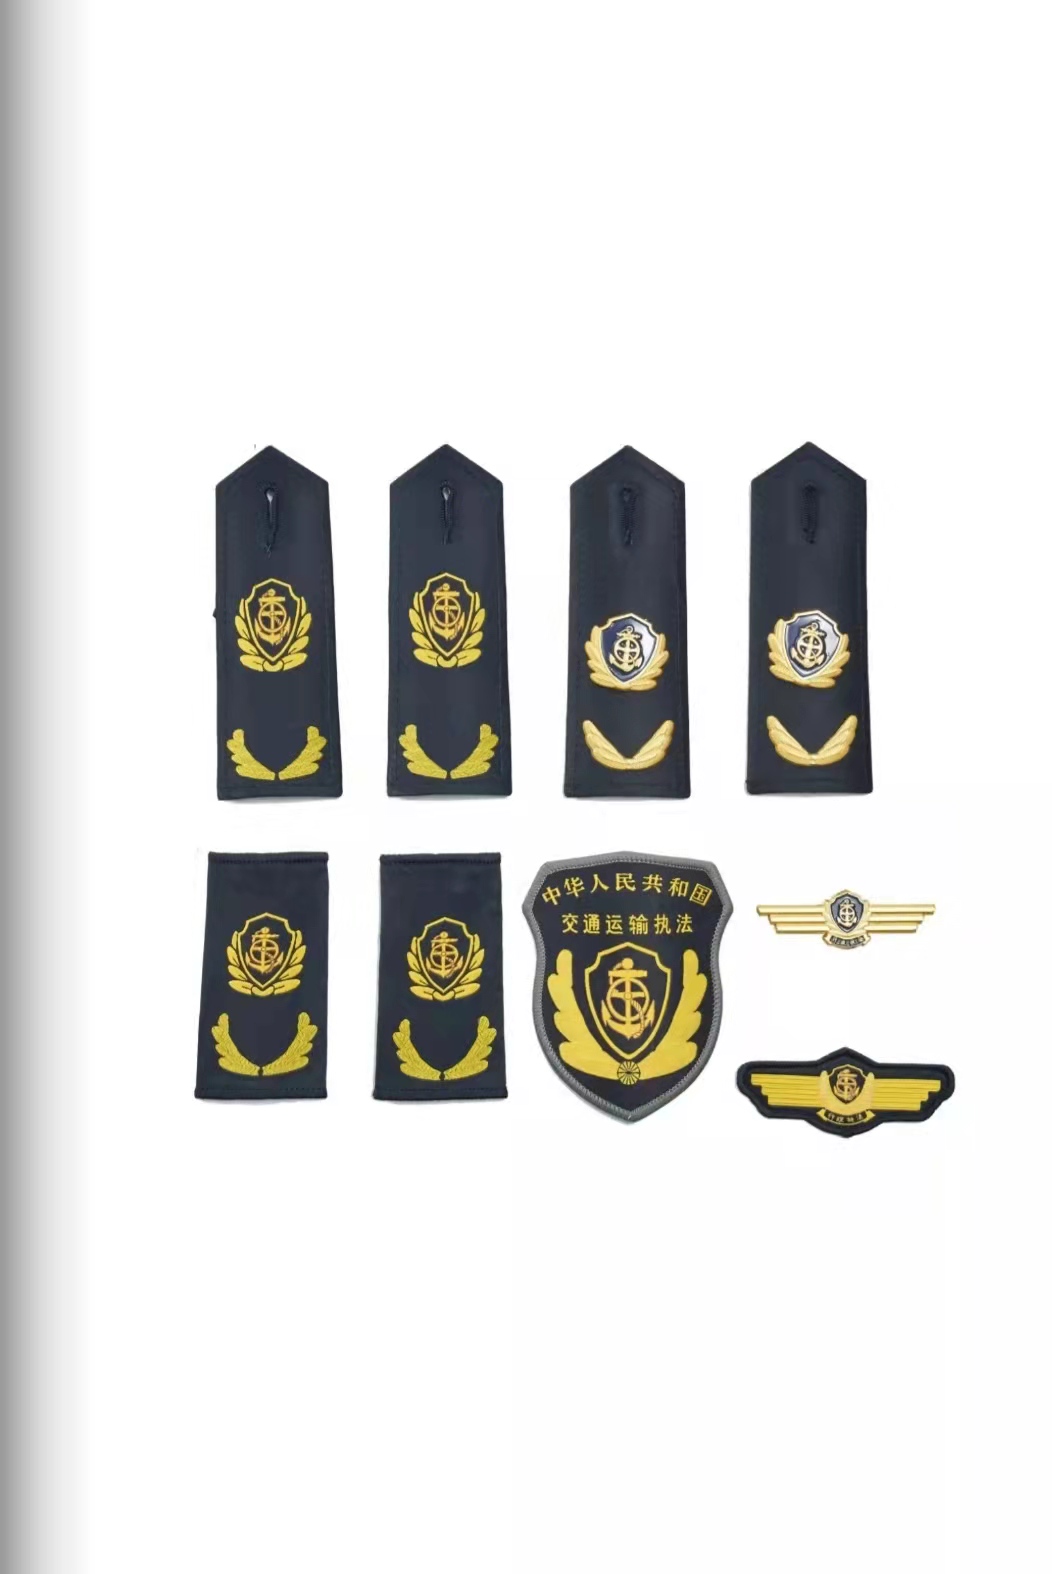 鄂尔多斯六部门统一交通运输执法服装标志